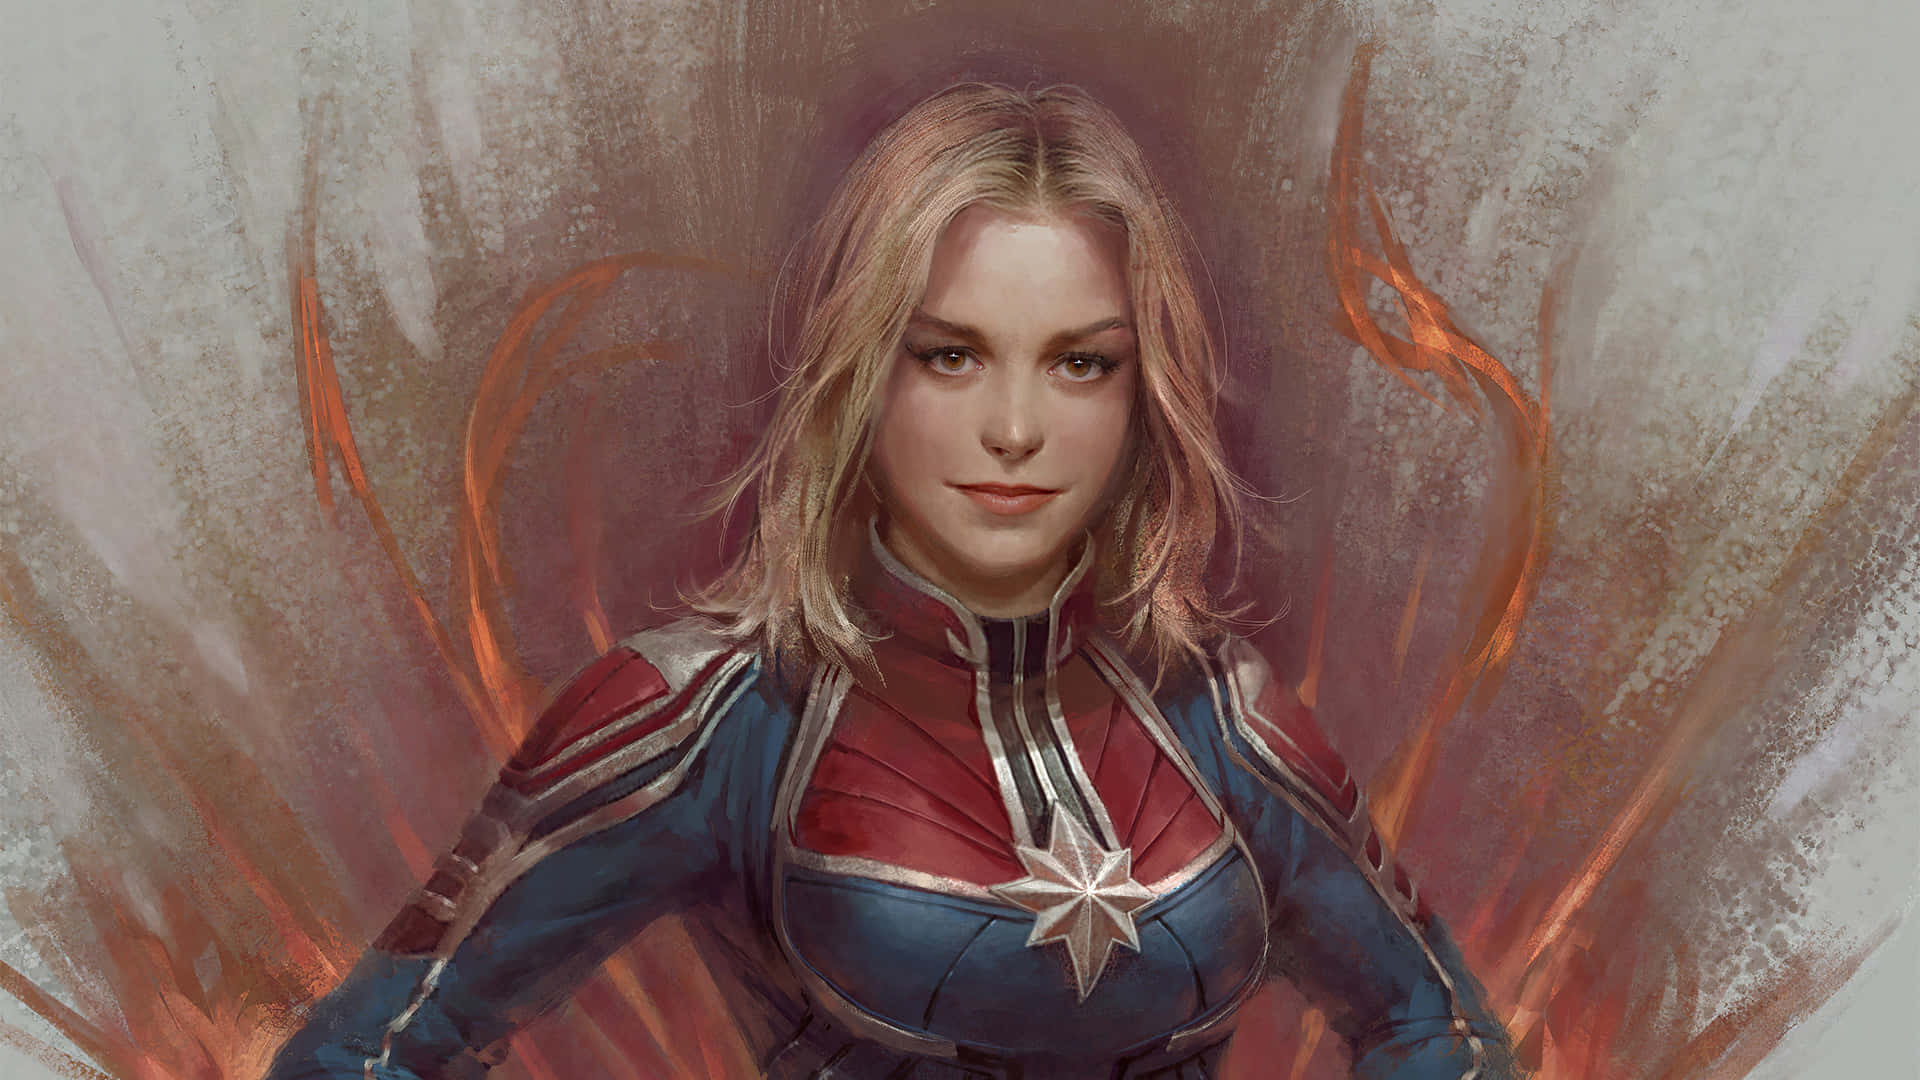 Liberaal Superhéroe Que Llevas Dentro Con El Nuevo Ipad De Captain Marvel. Fondo de pantalla